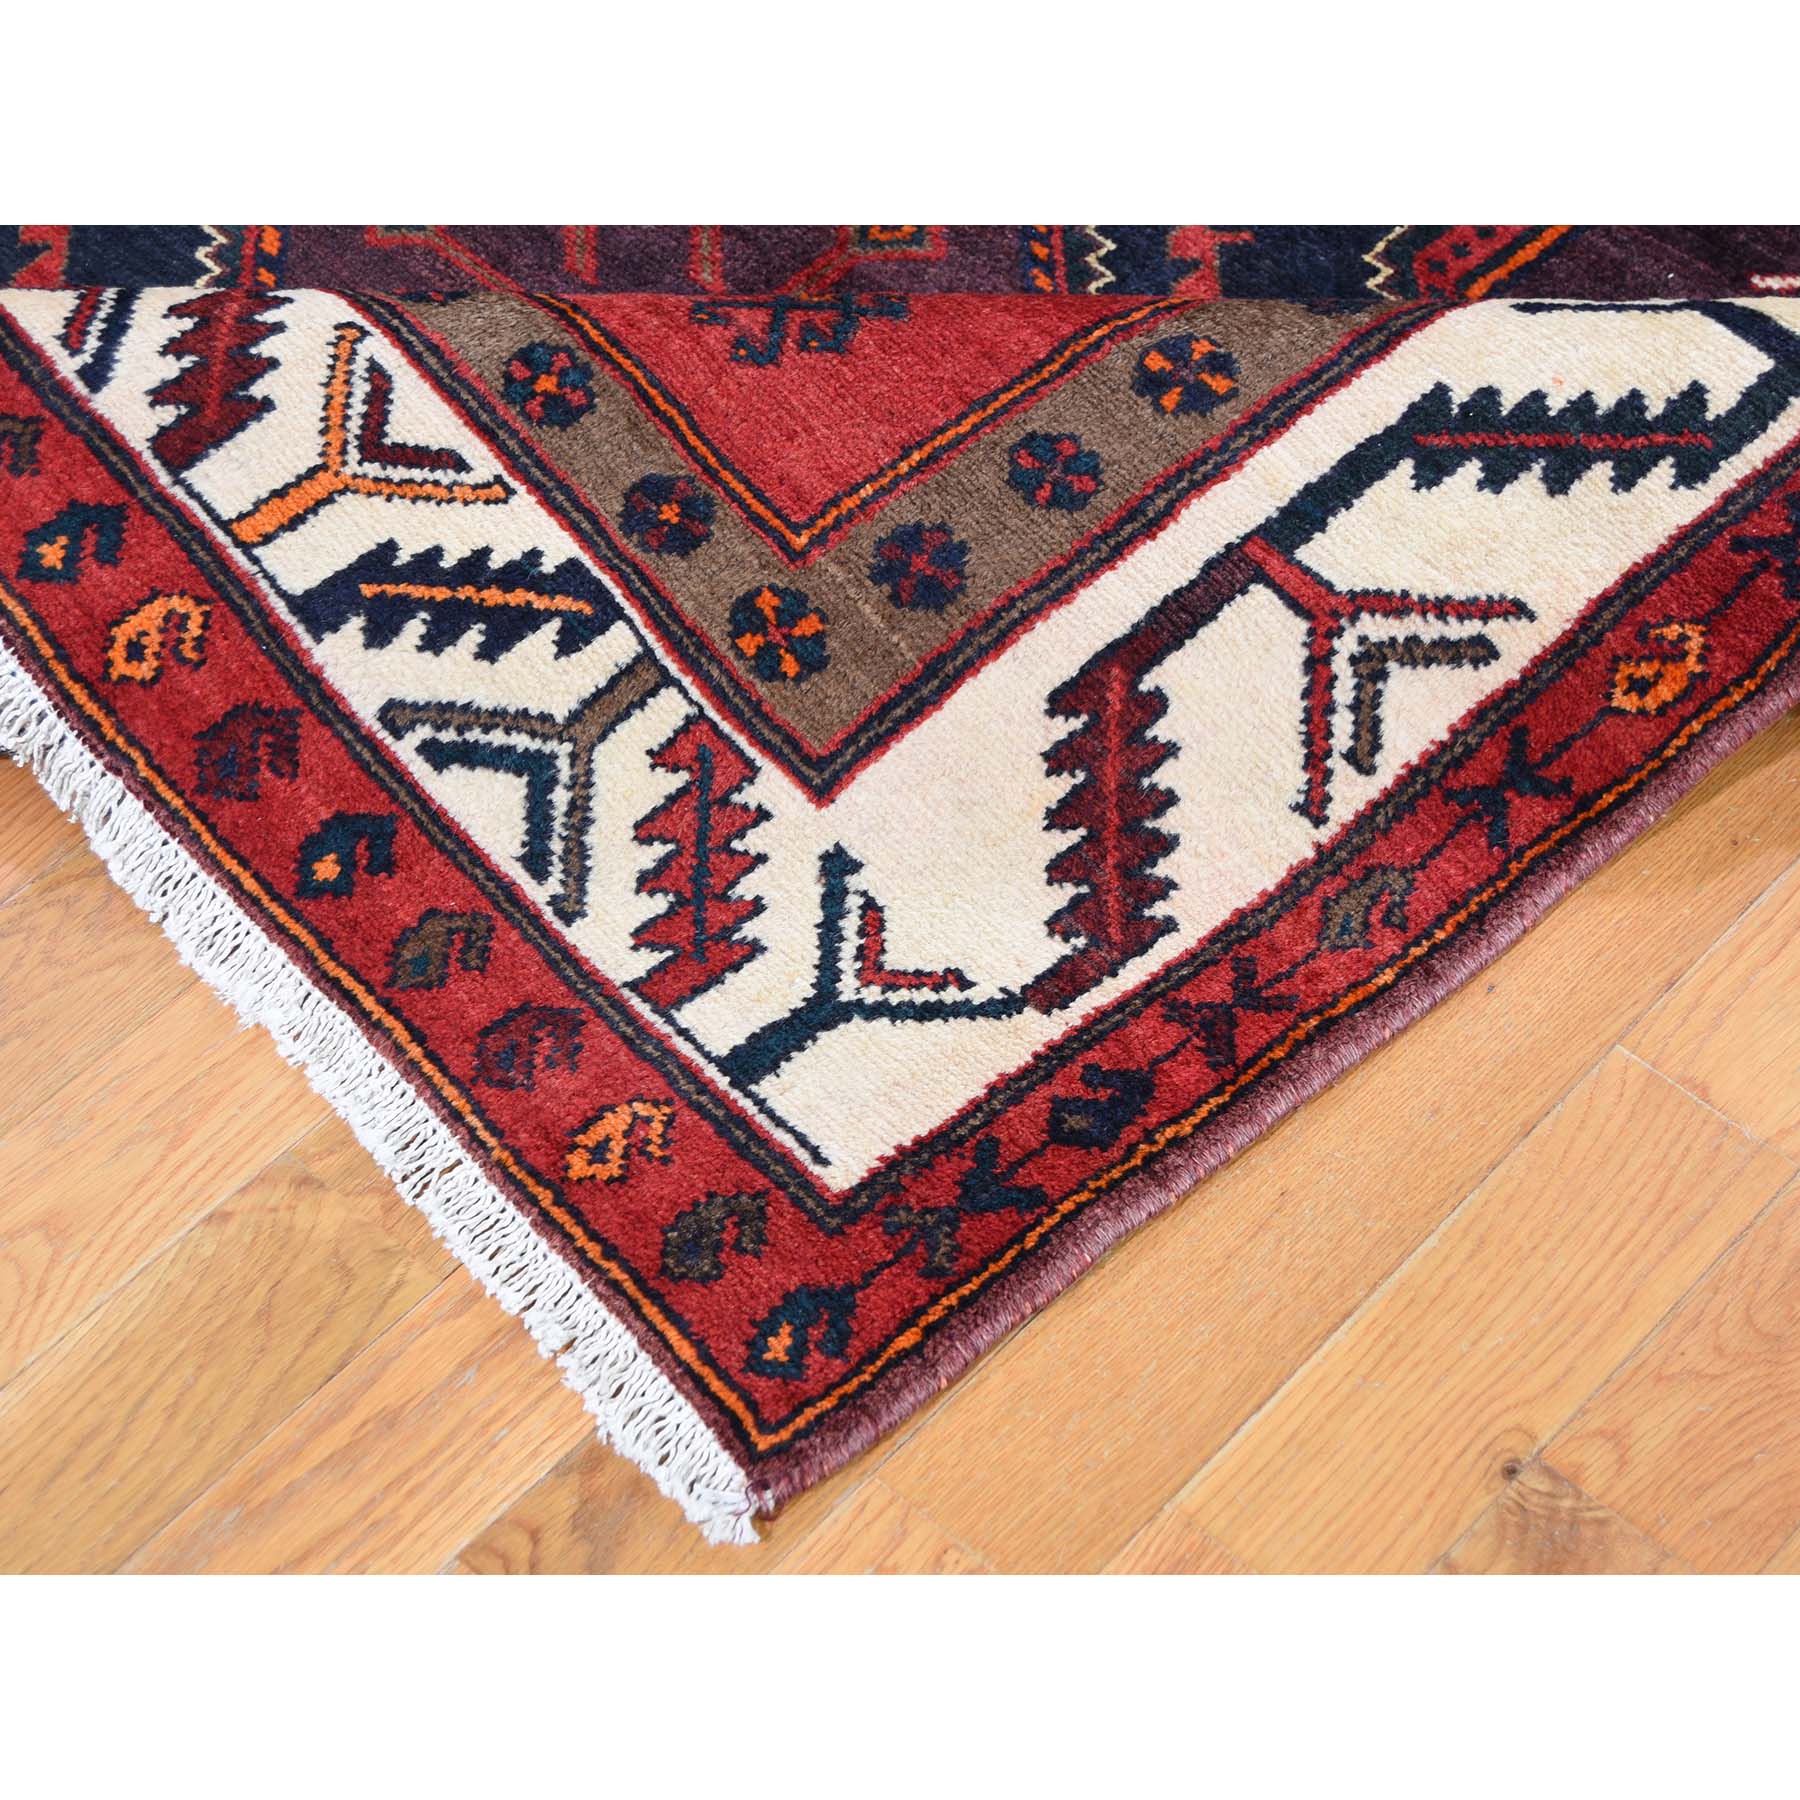 Handmade Persian Runner Rug > Design# SH45824 > Size: 5'-2" x 10'-6" [ONLINE ONLY]